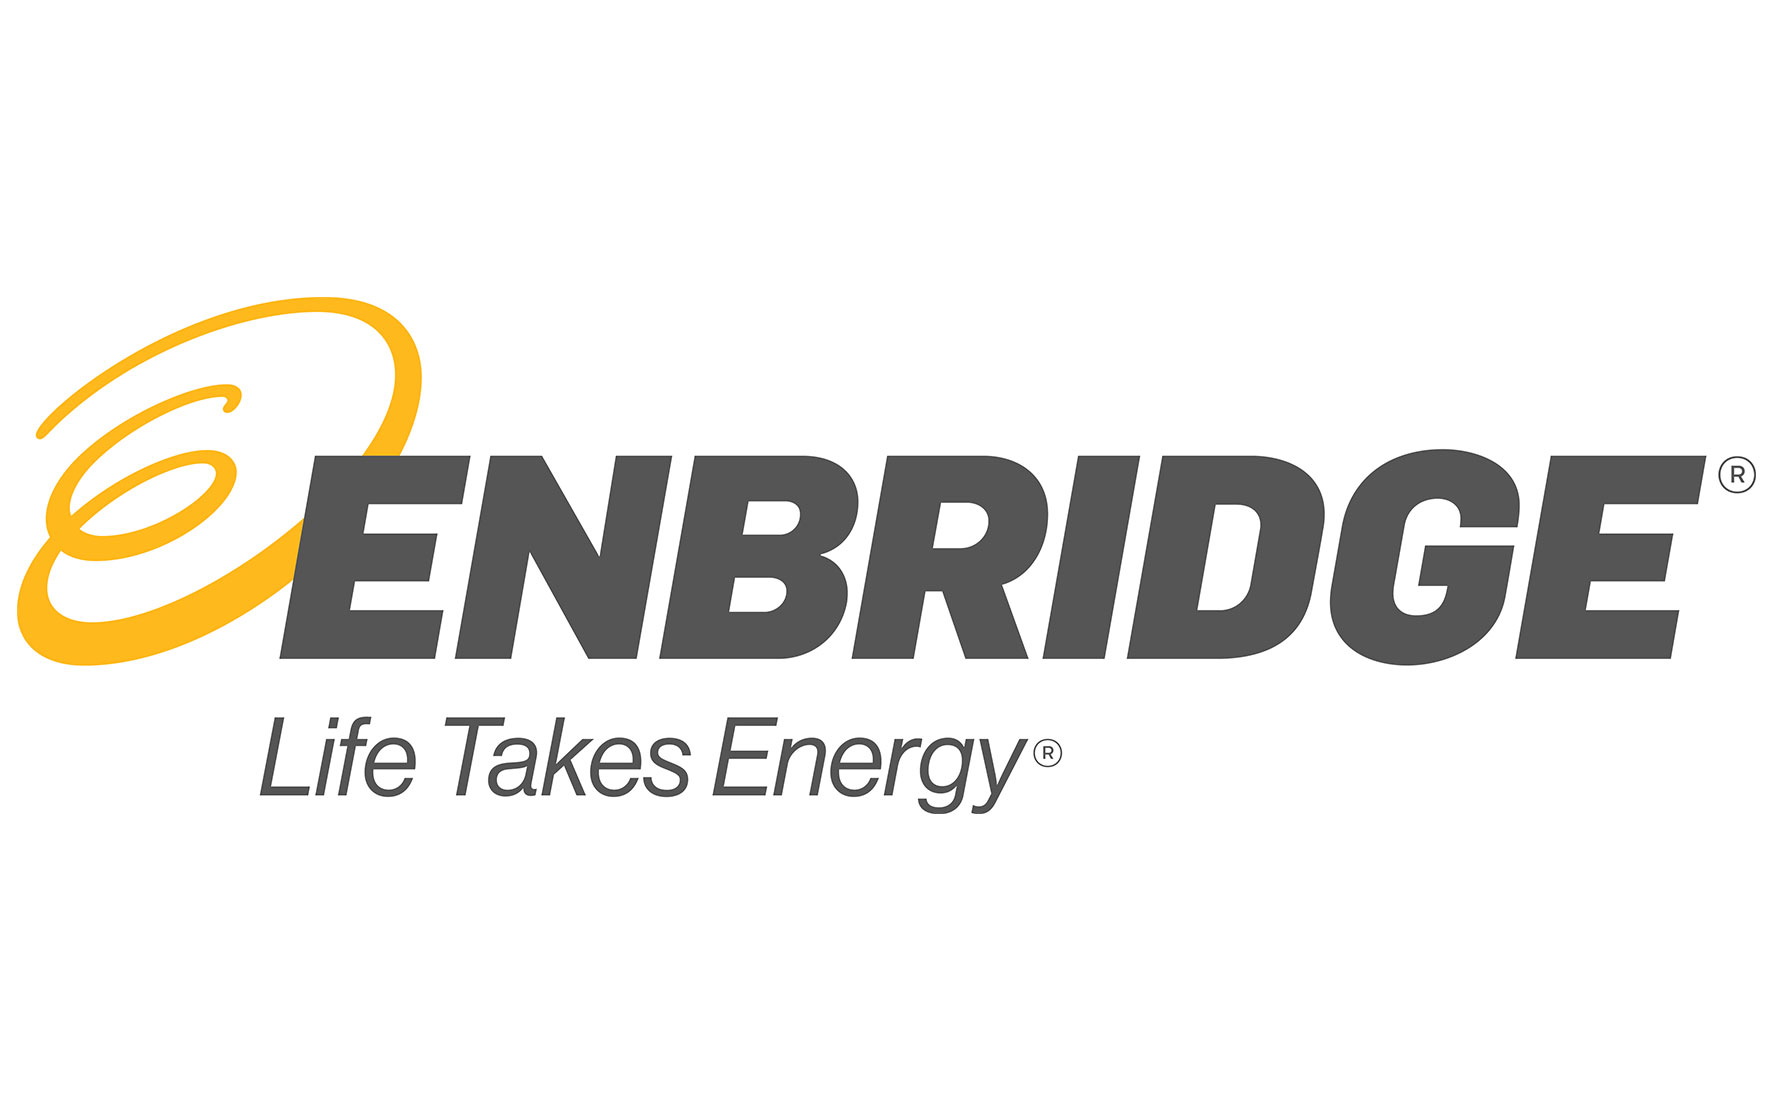 Presenting Sponsor Enbridge's logo